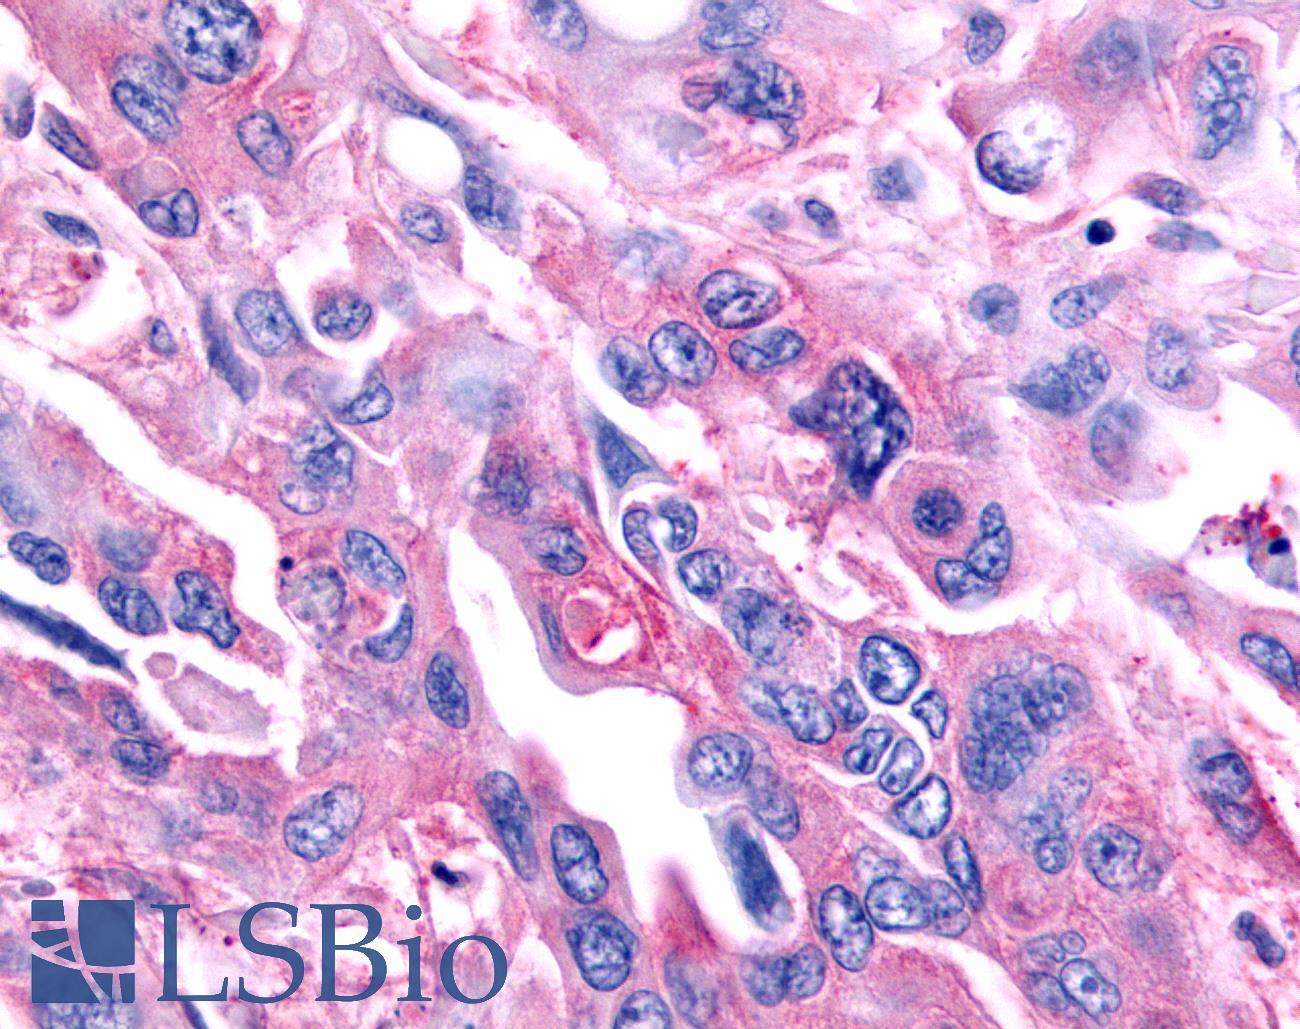 NR0B2 Antibody - Pancreas, carcinoma